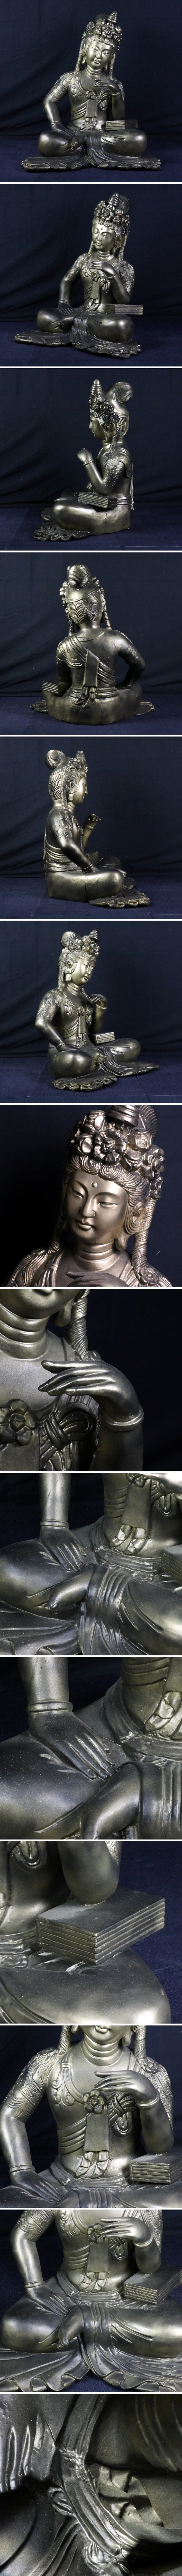 宙】仏教美術木彫チベット仏特大サイズ80cm 仏像細密彫鍍金メッキ唐物